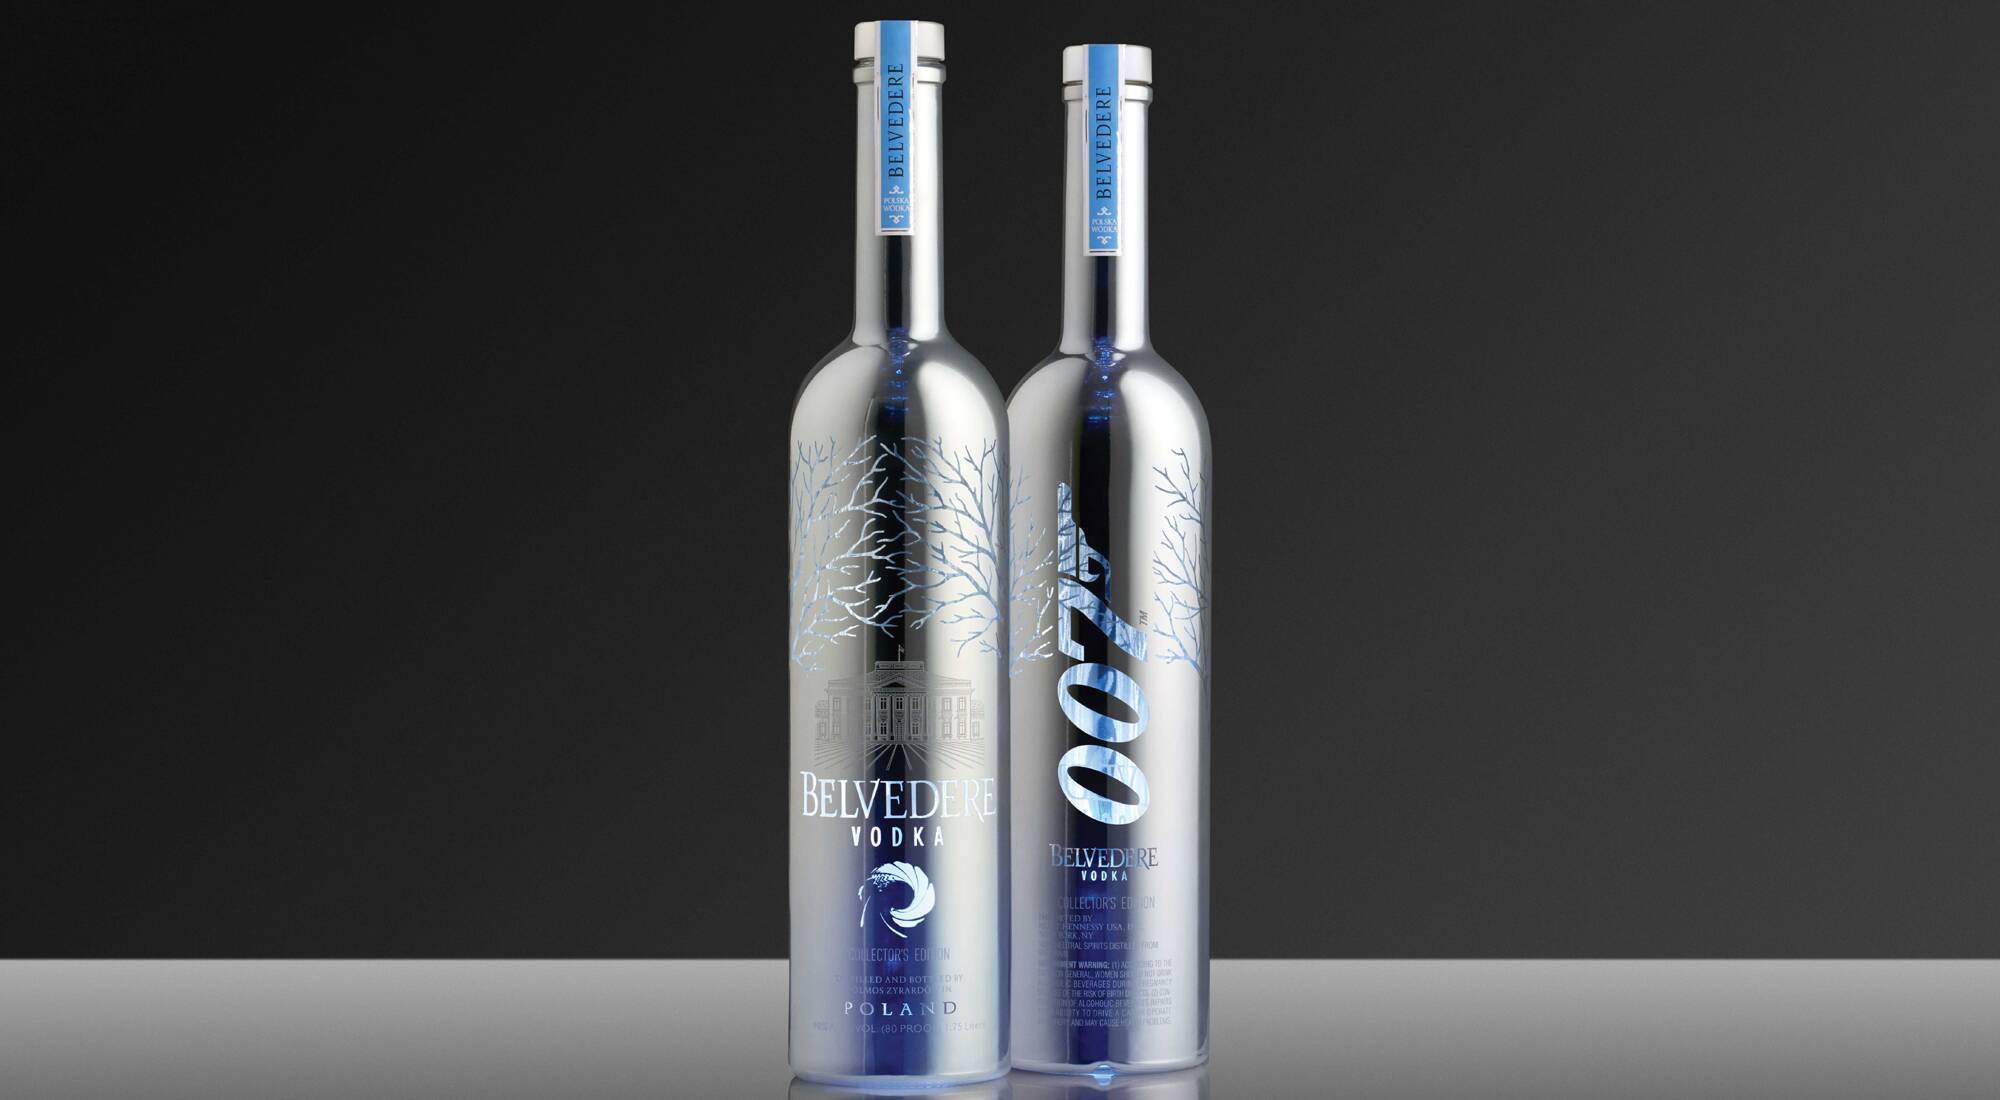 Belvedere, James Bond's vodka - LVMH